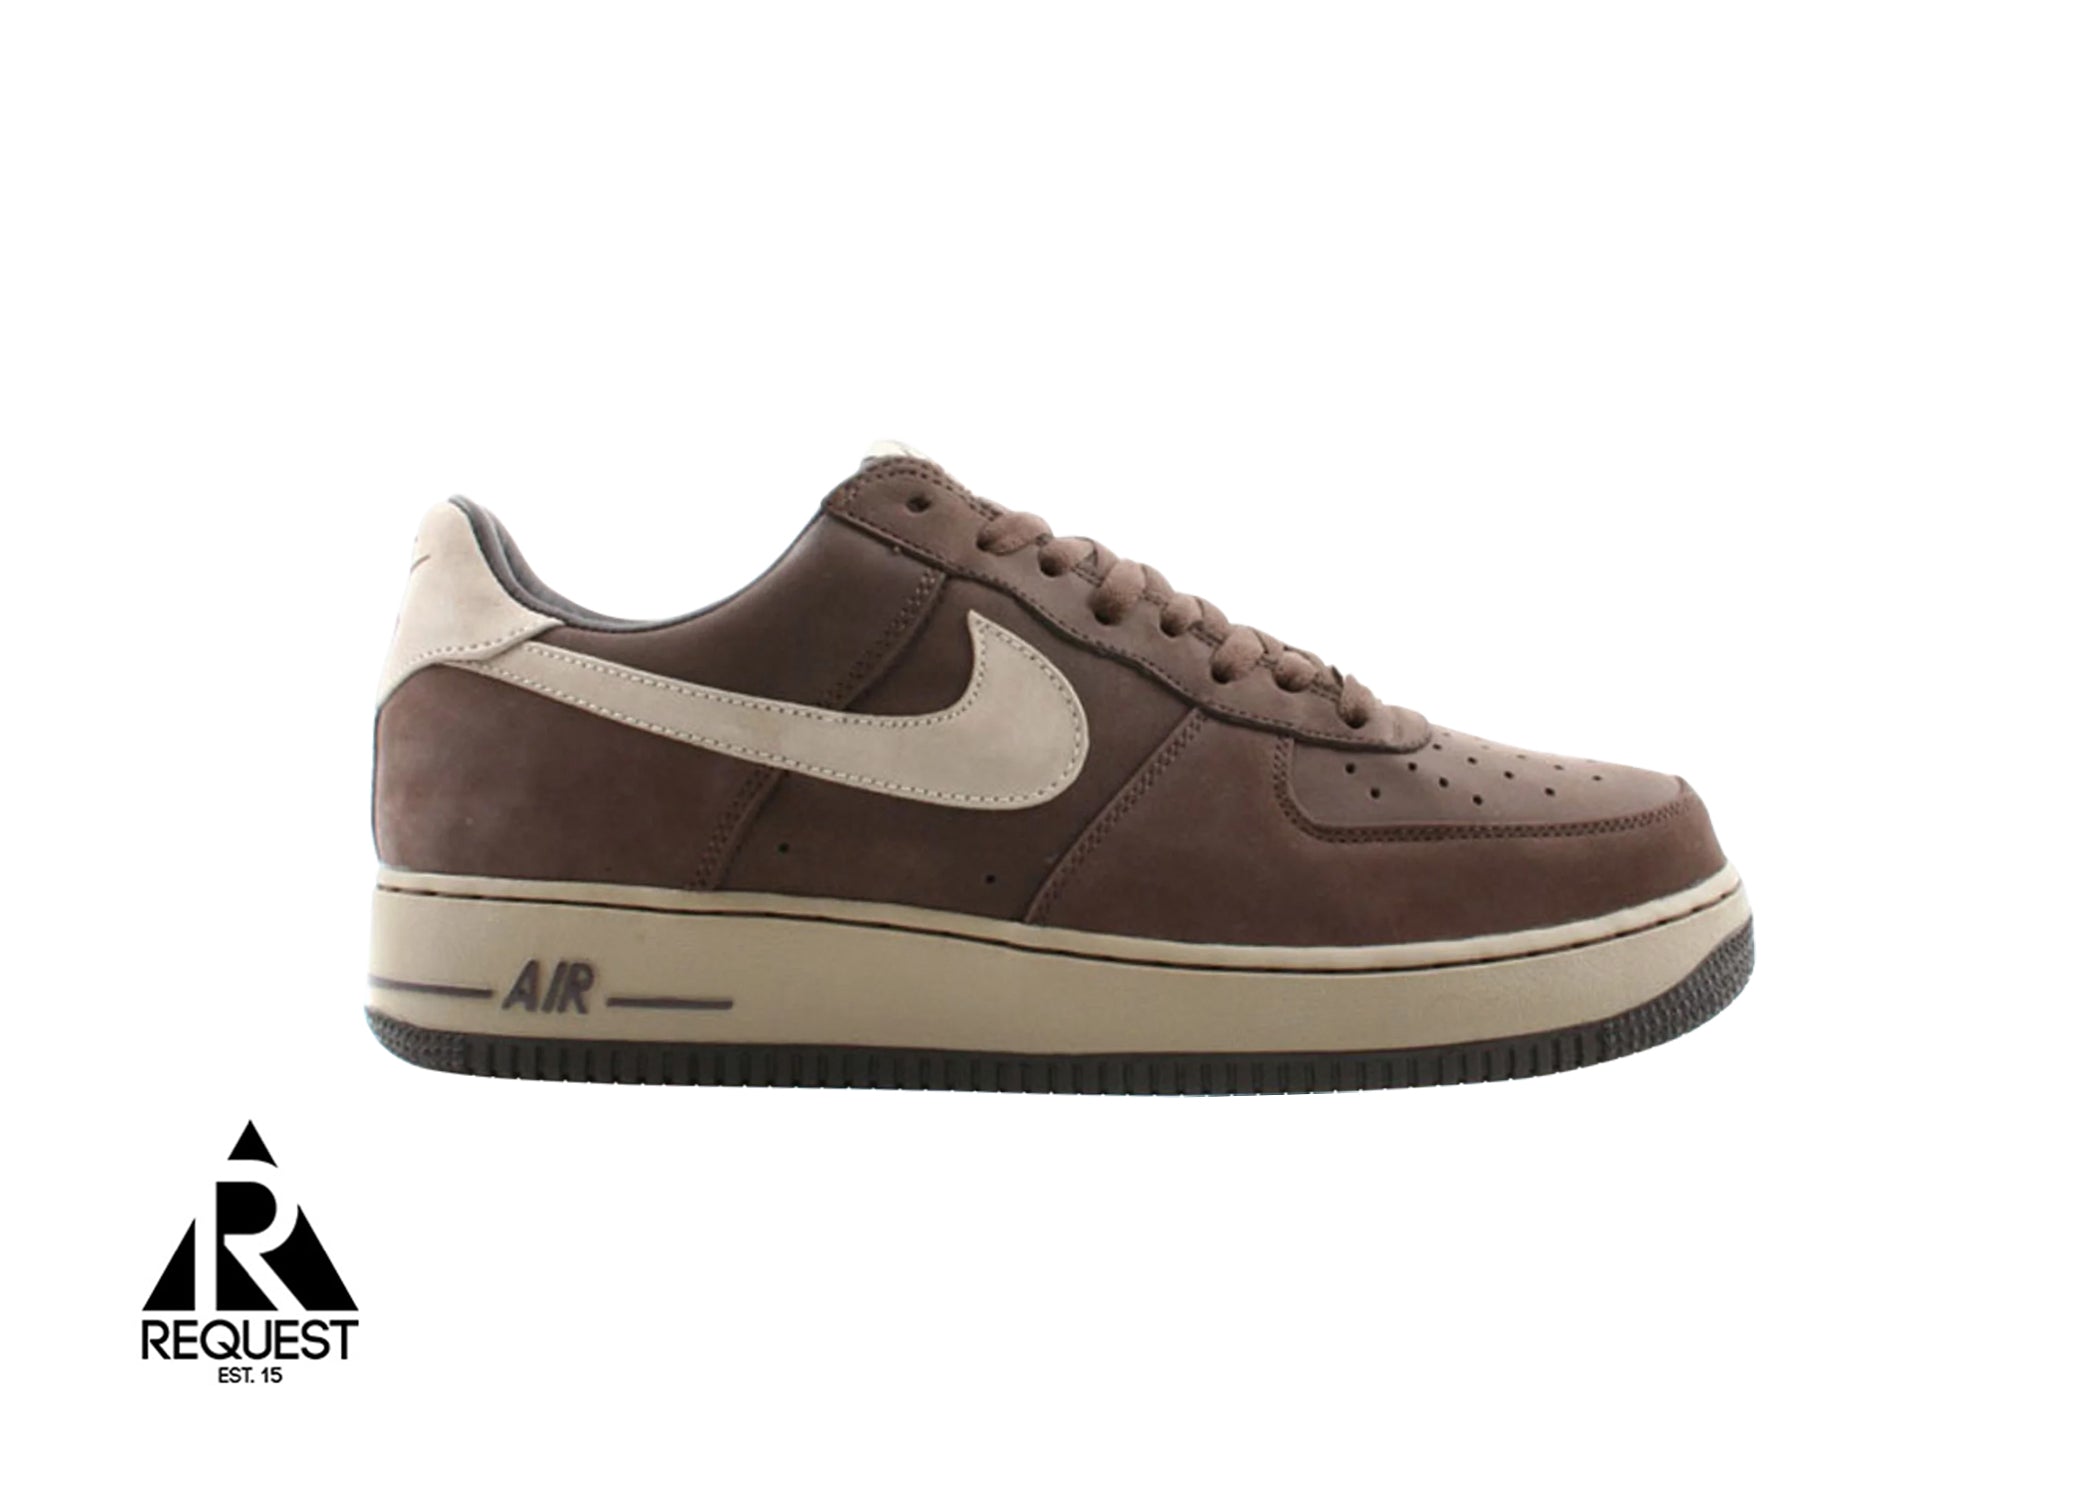 Nike Air Force 1 Low Premium "Brown"